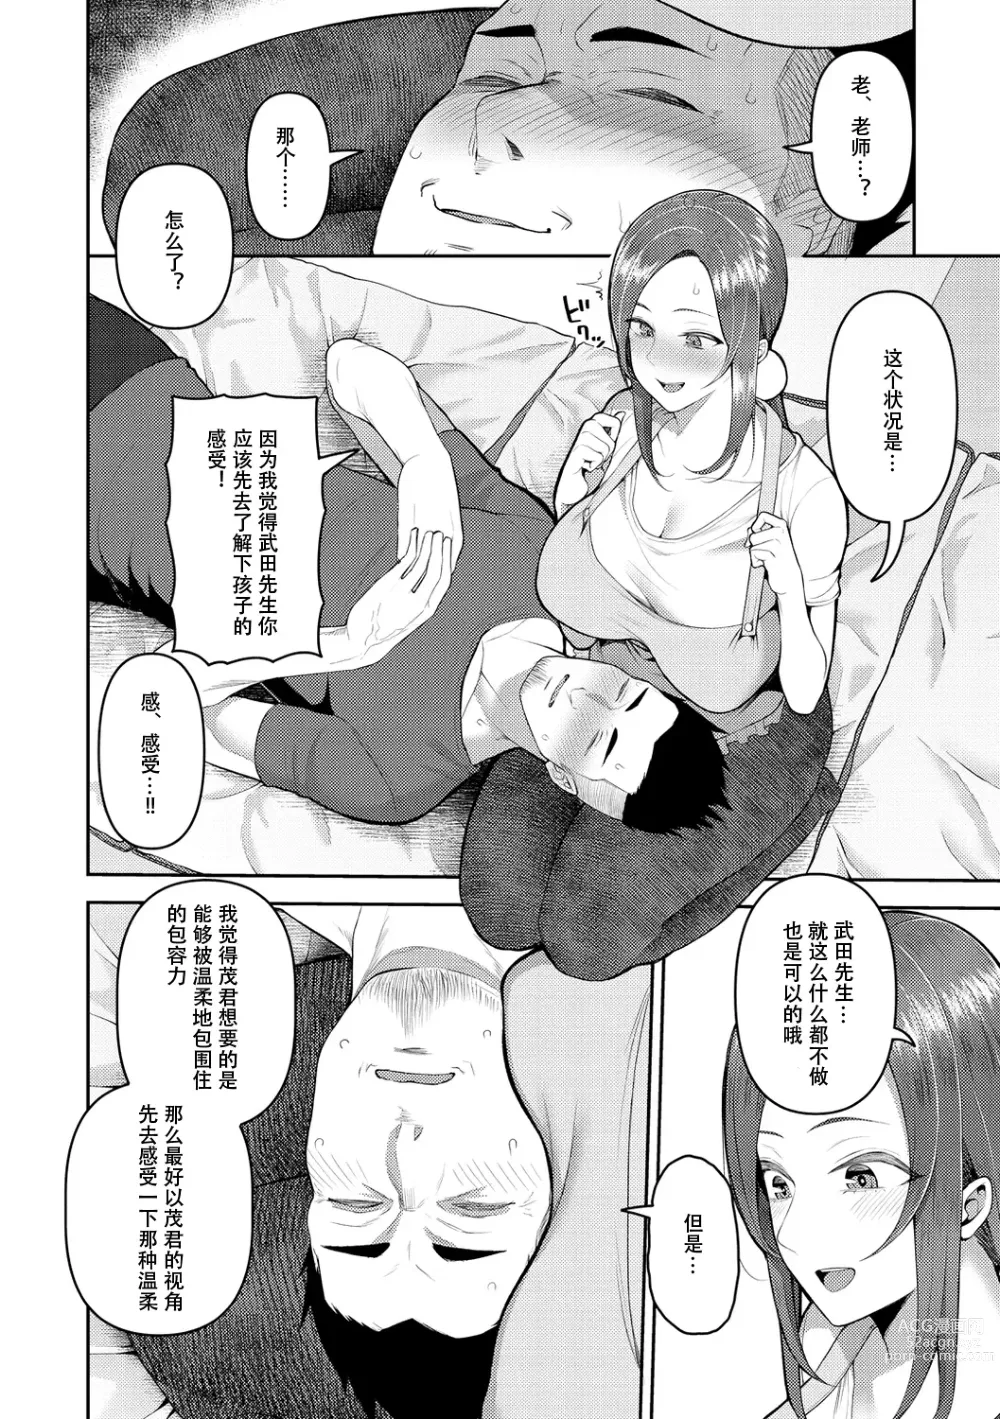 Page 8 of manga Amaete Hoshii no - I want you to spoil me